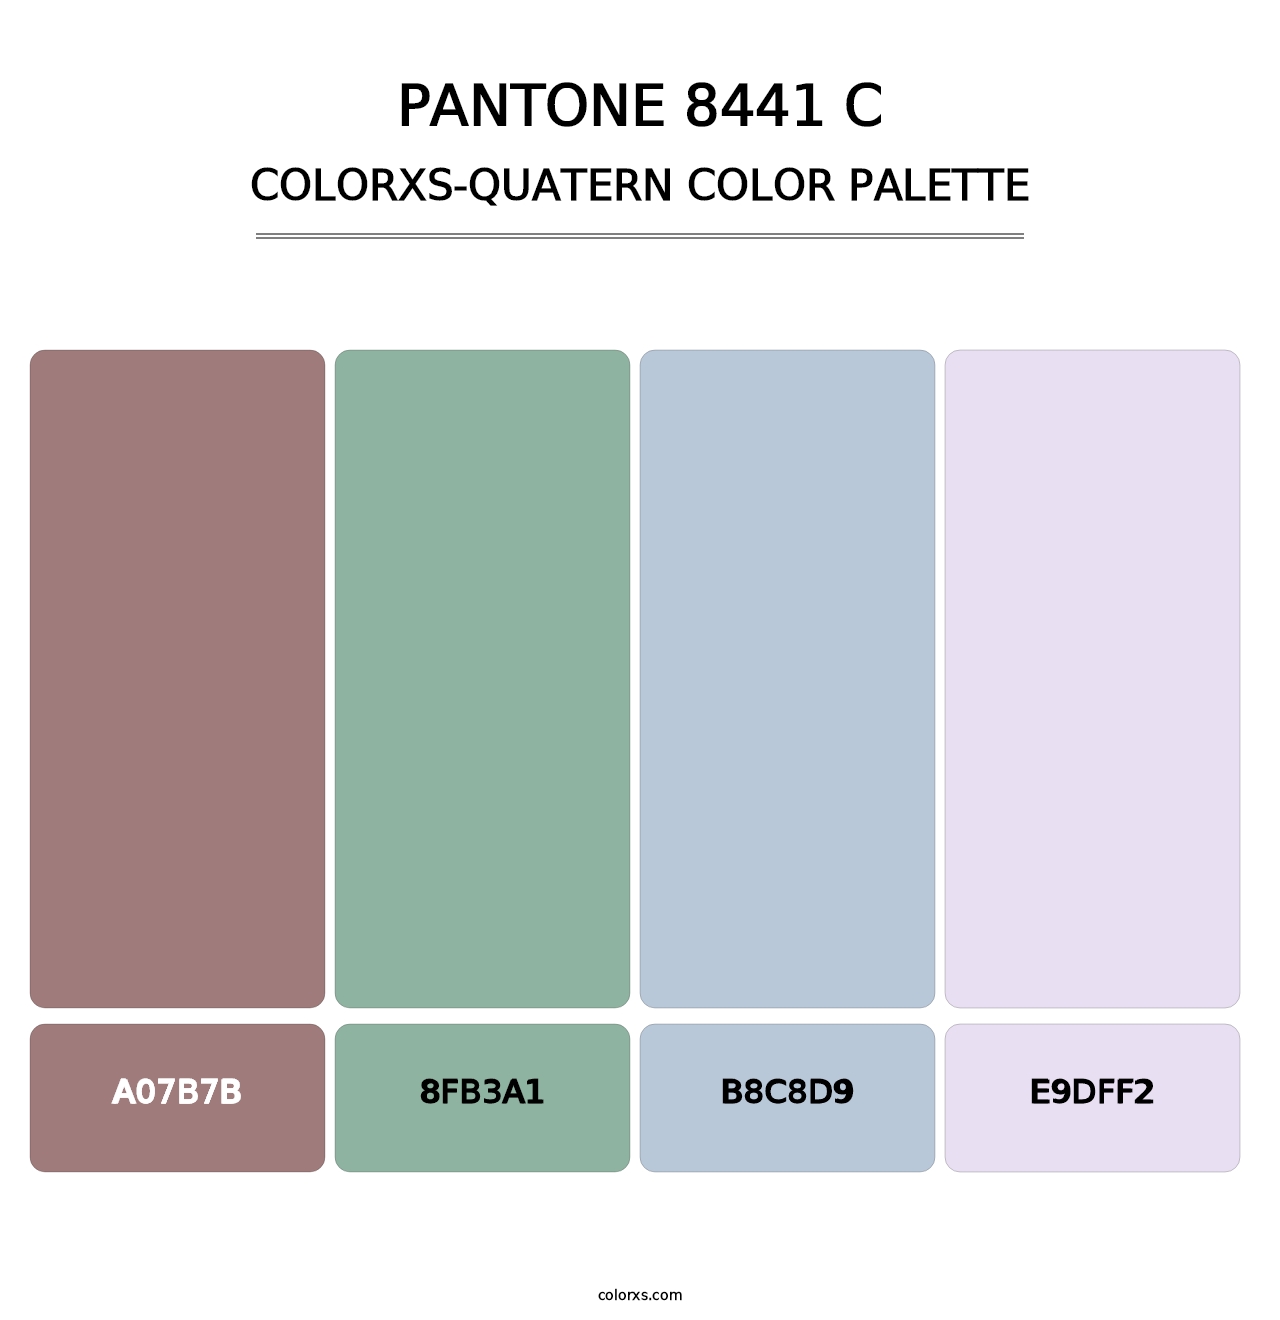 PANTONE 8441 C - Colorxs Quatern Palette